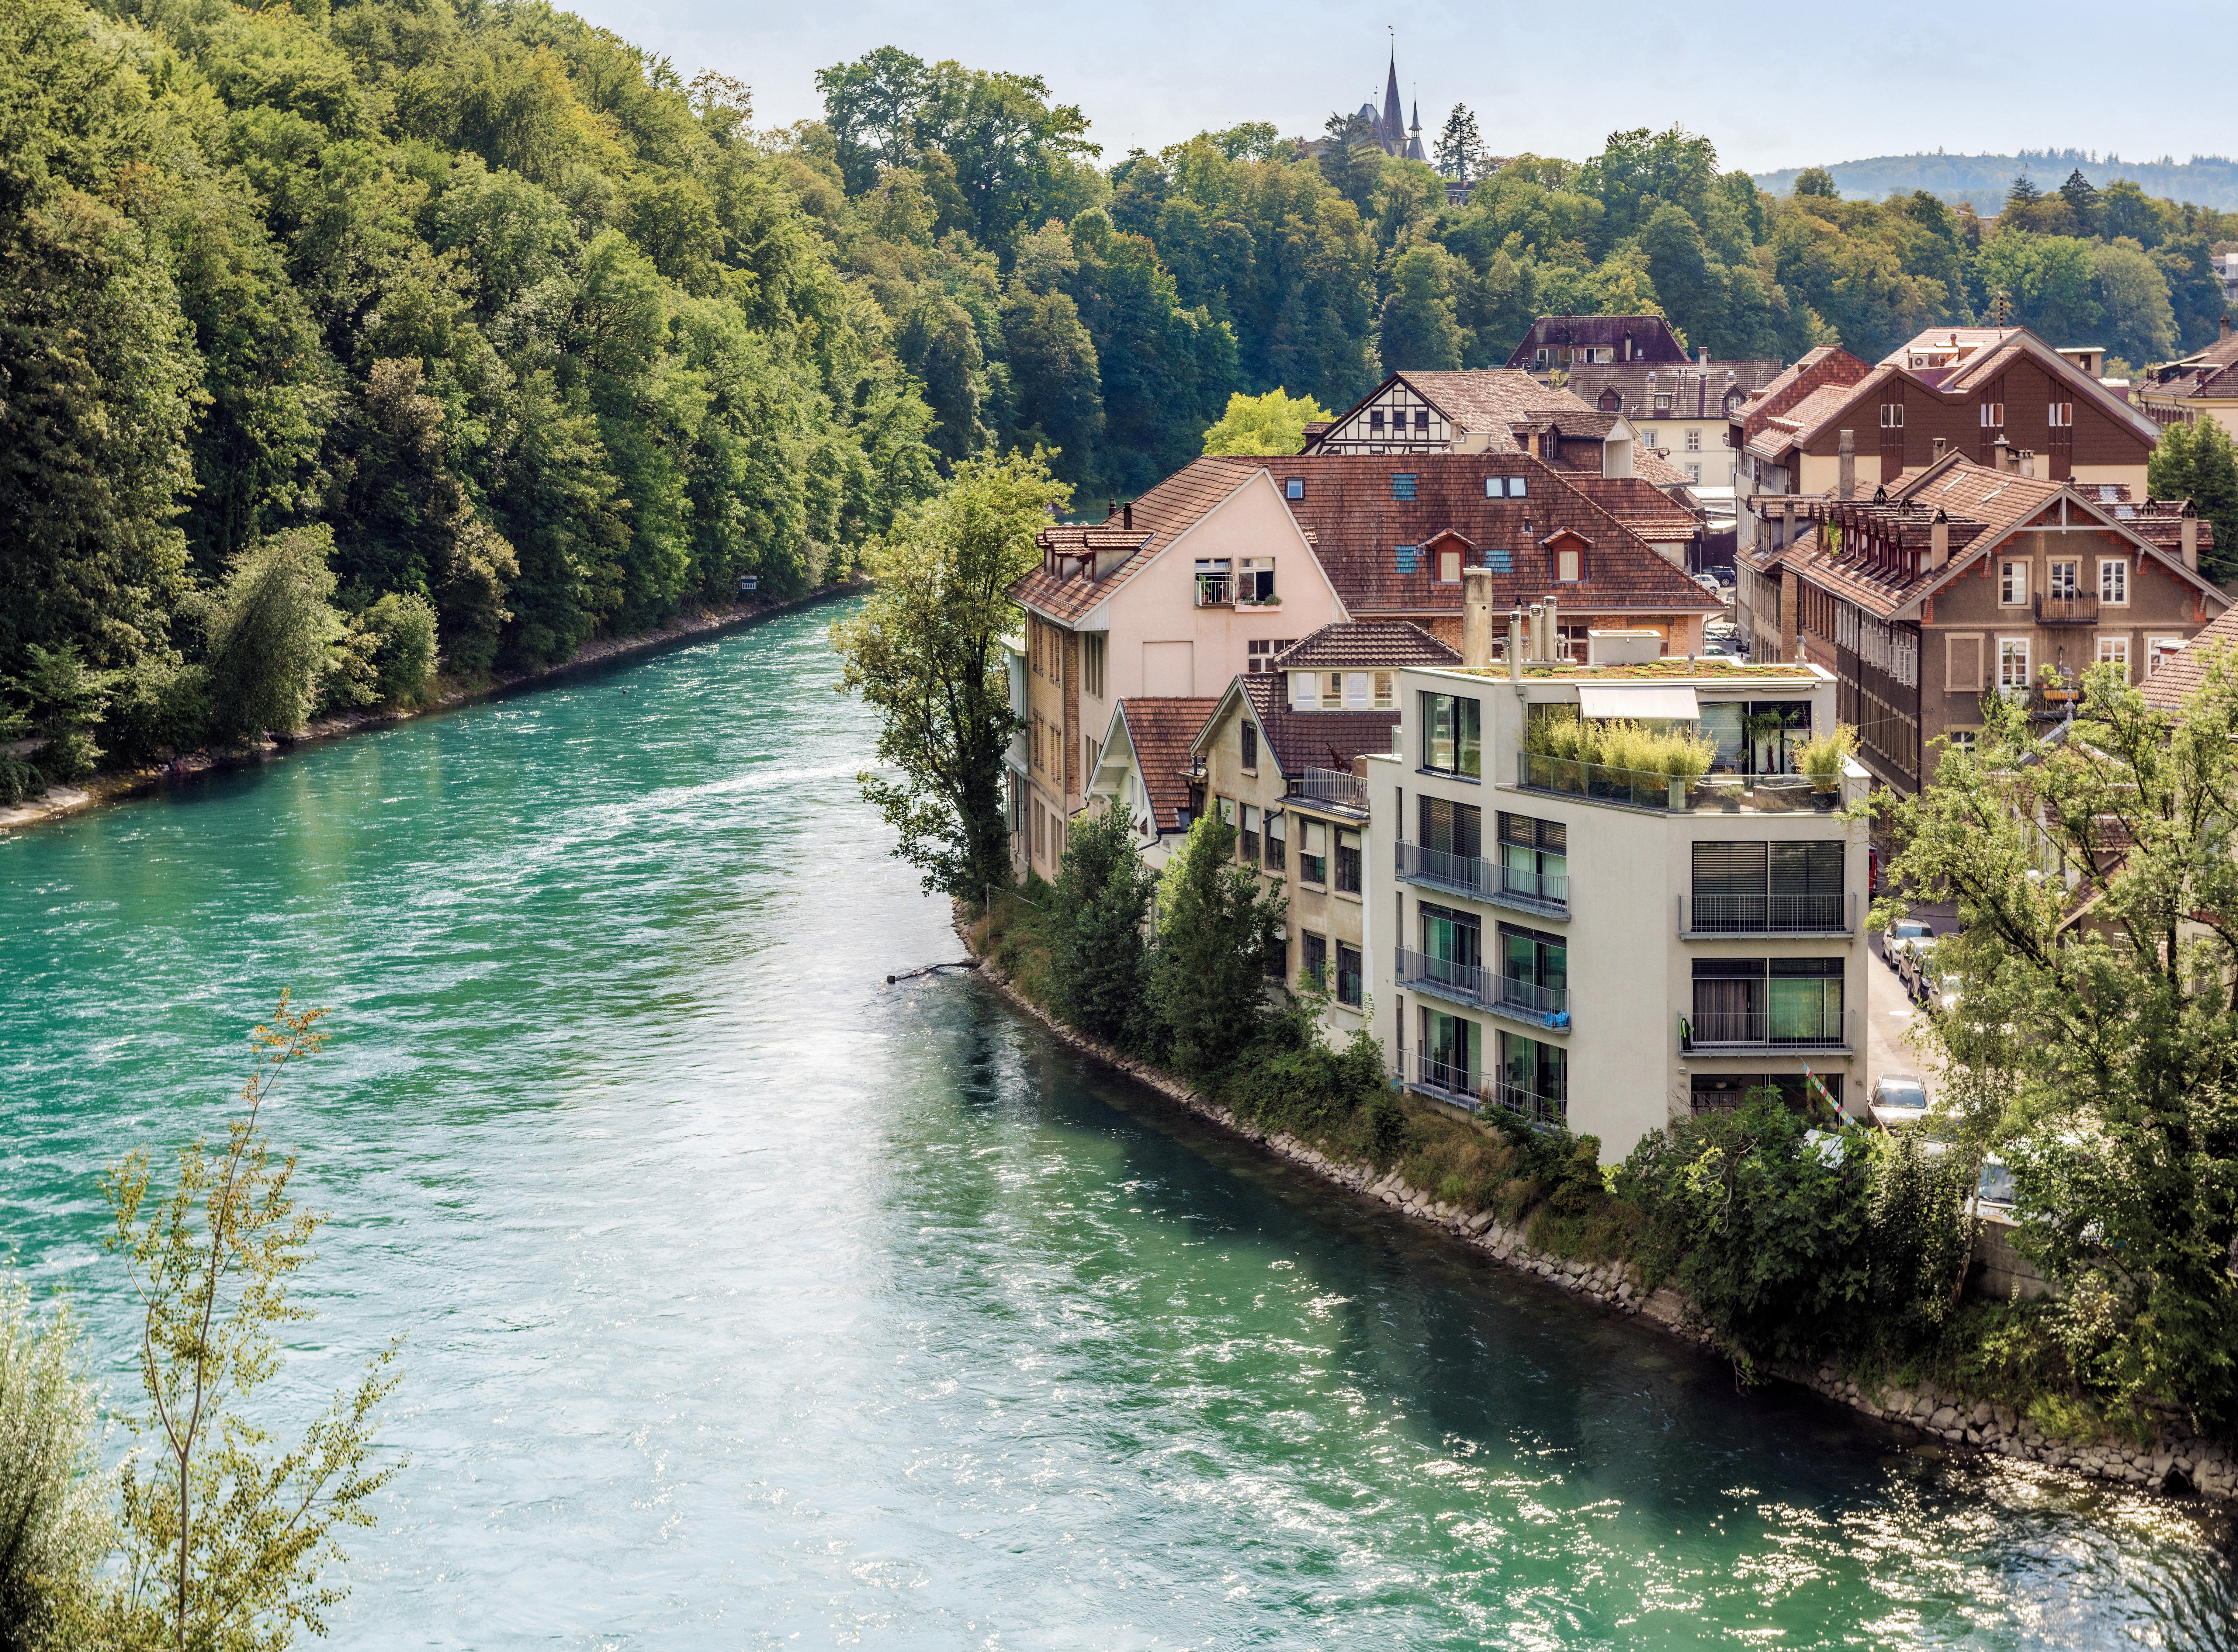  Landschaftsbild von der Stadt Bern